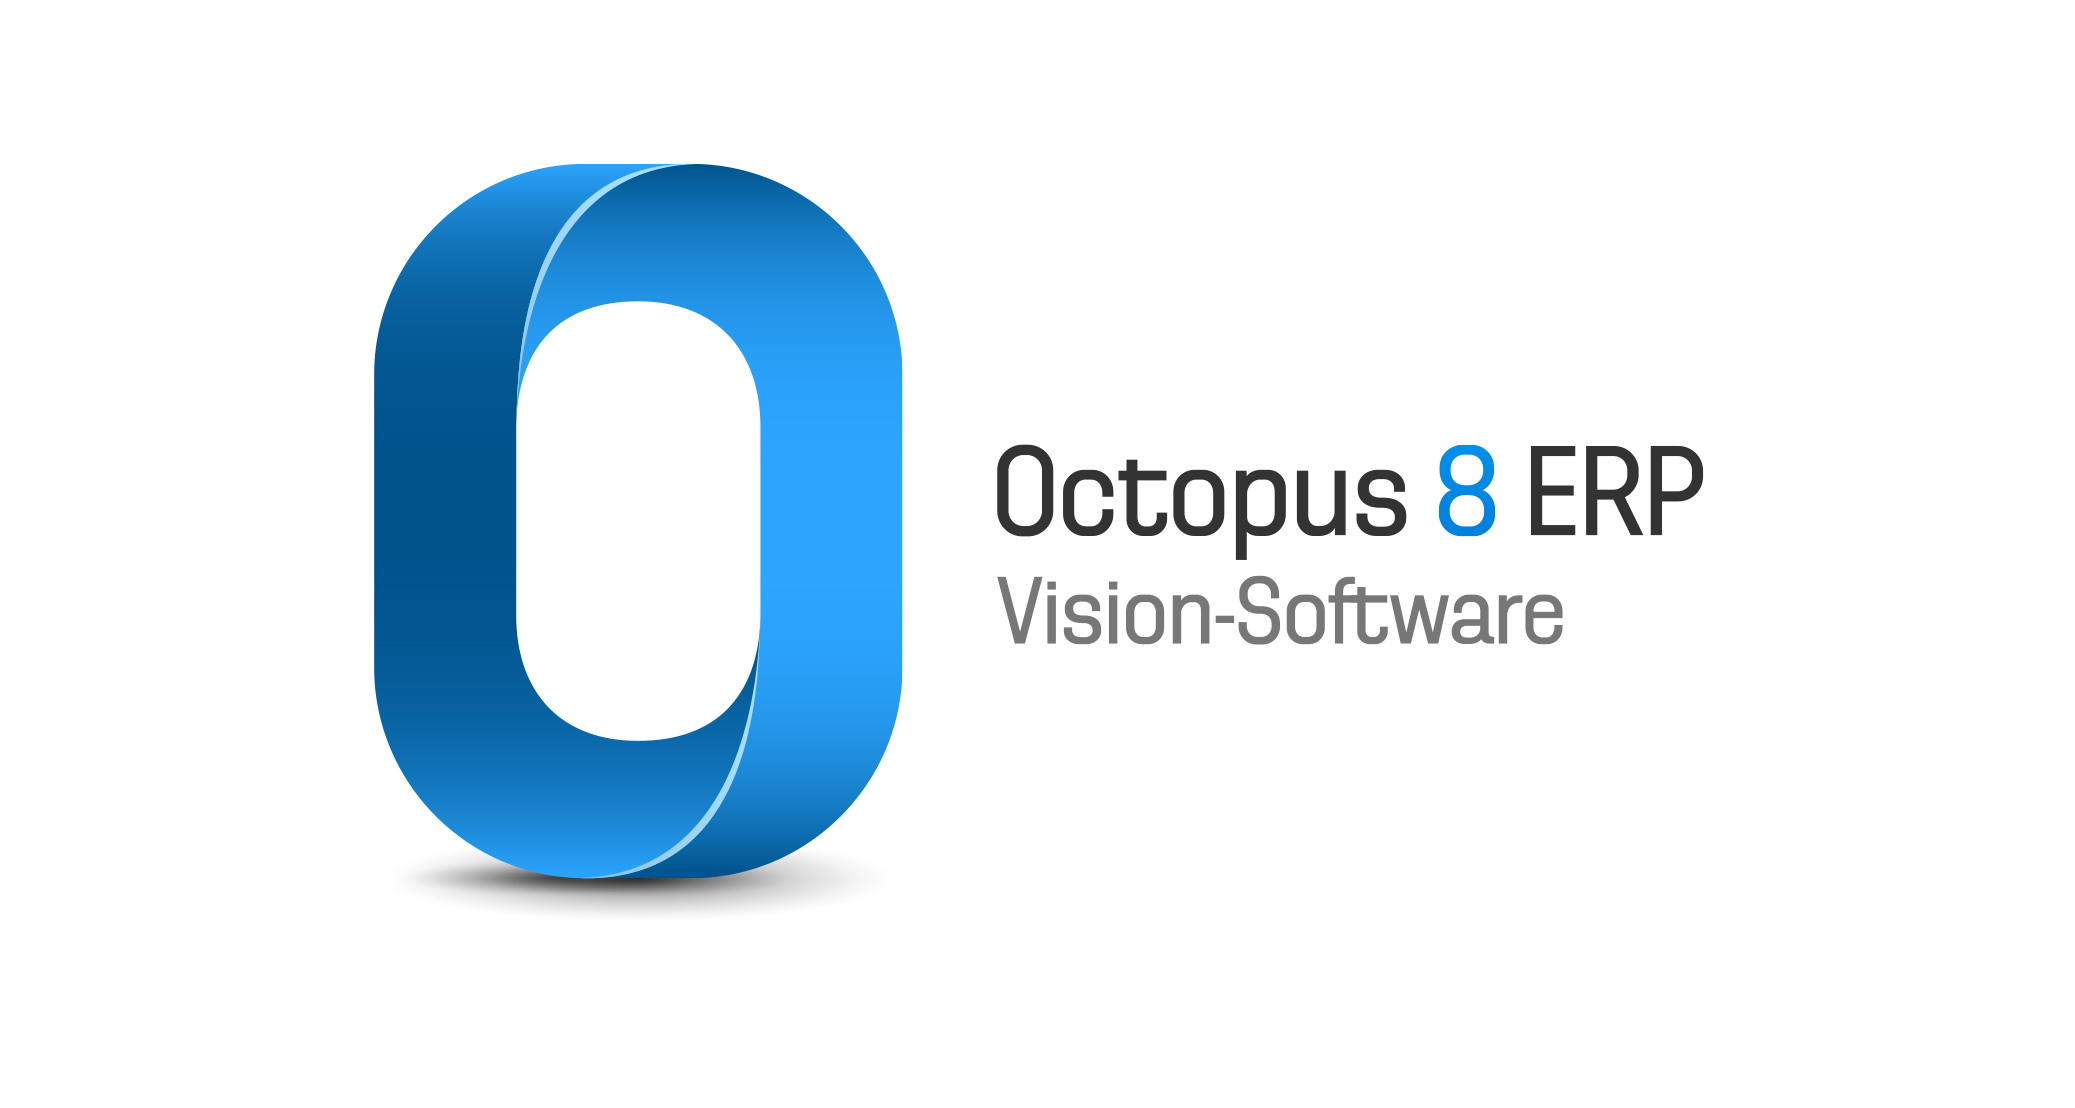 Octopus 8 ERP